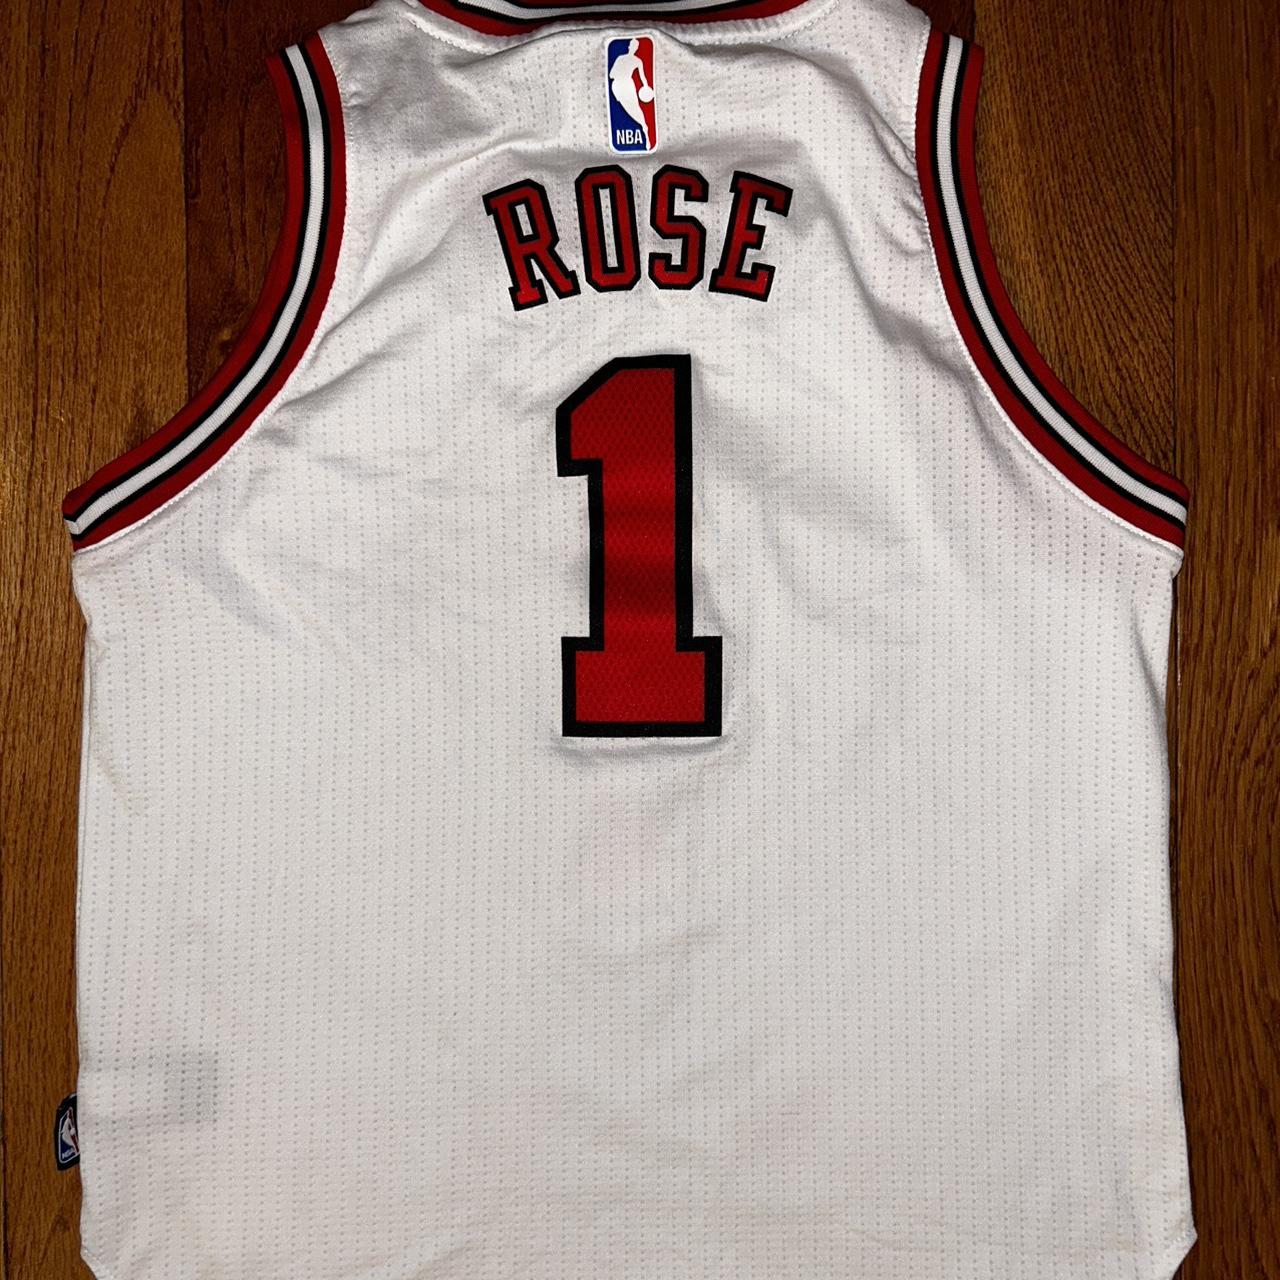 Vintage jersey 🍄 Chicago bulls, Derrick Rose $6.20 - Depop